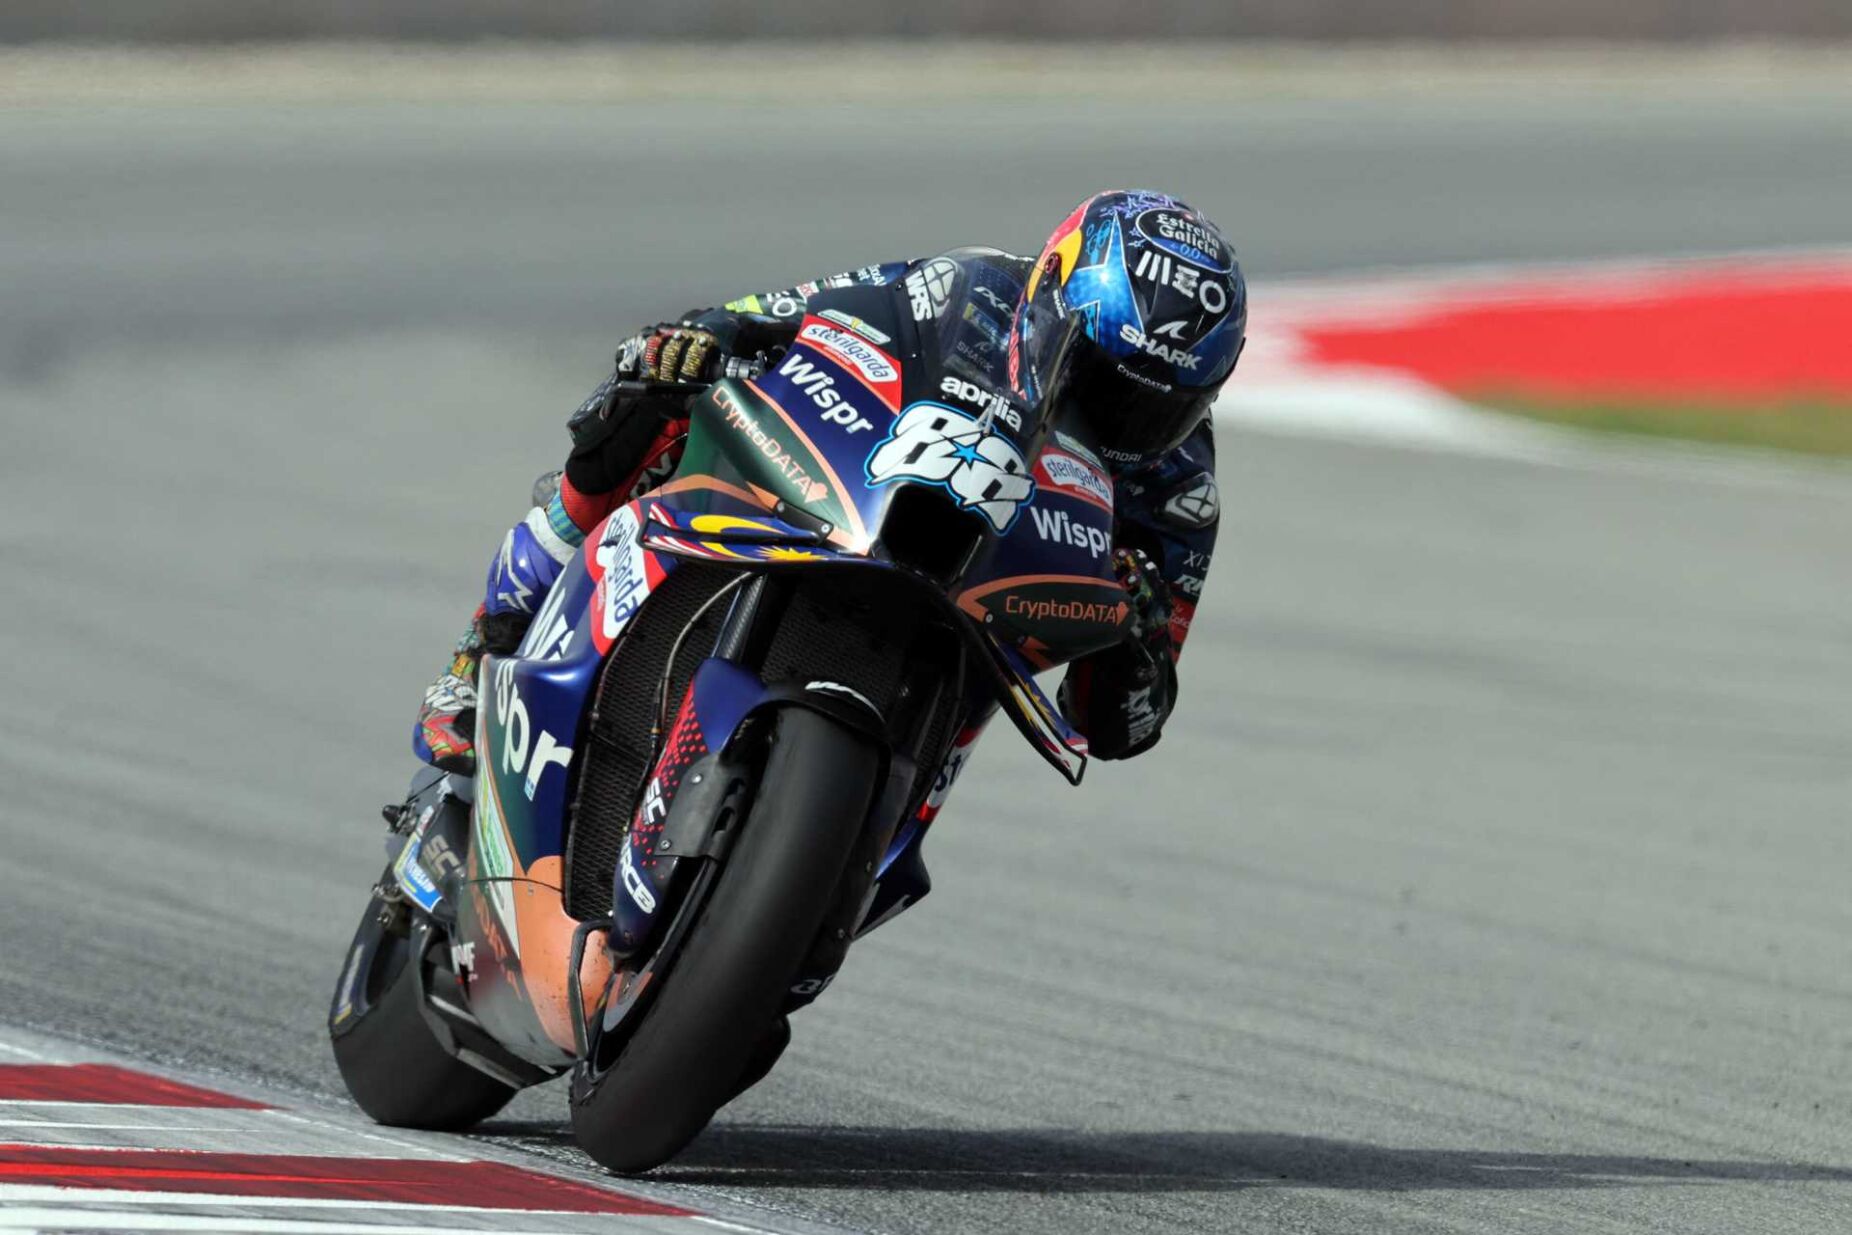 MotoGP, O que acham os pilotos da decisão de passar a corrida principal  para sábado? - MotoSport